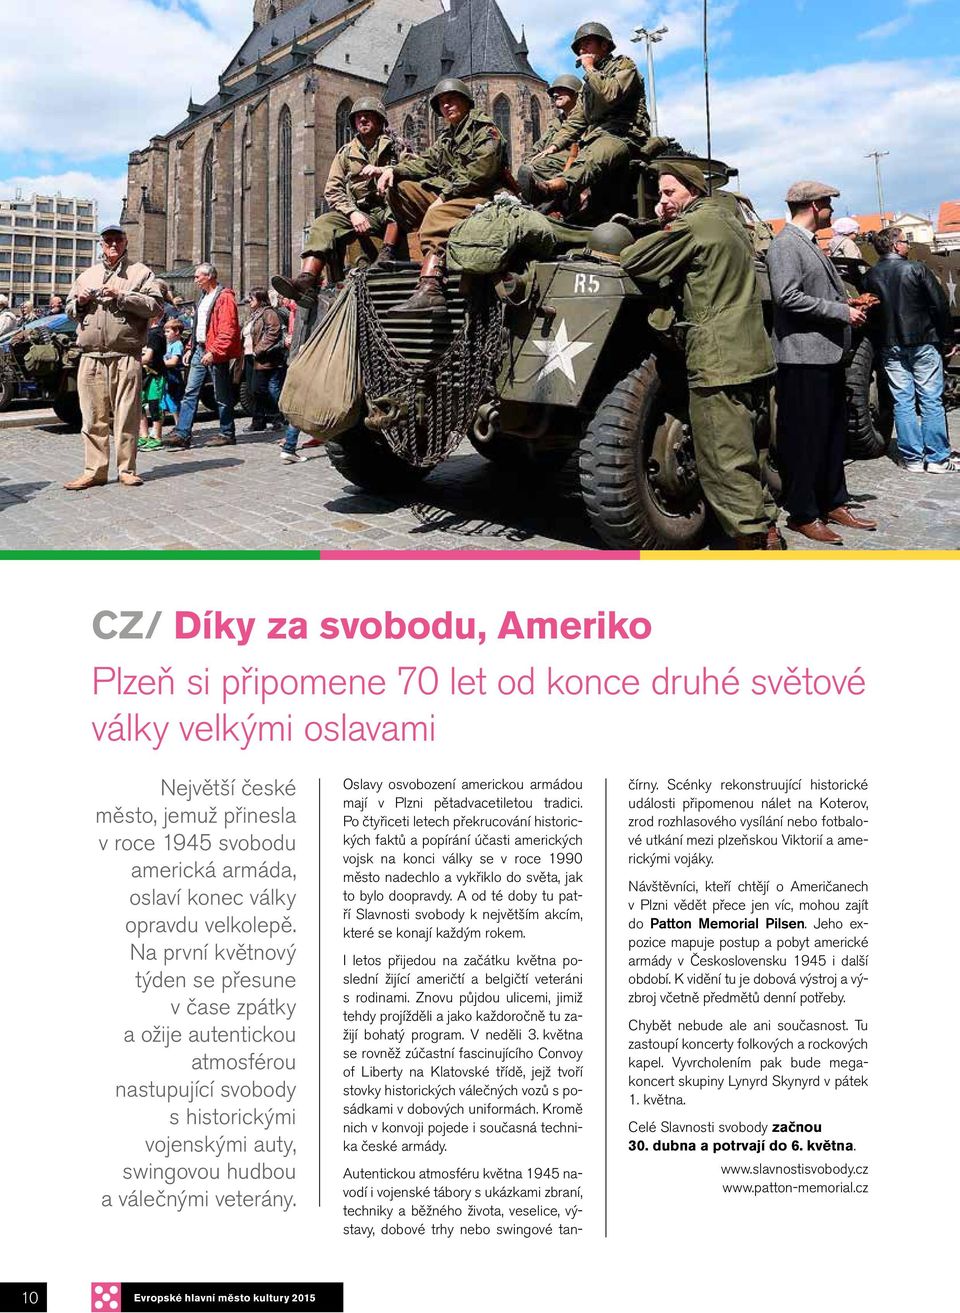 Oslavy osvobození americkou armádou mají v Plzni pětadvacetiletou tradici.